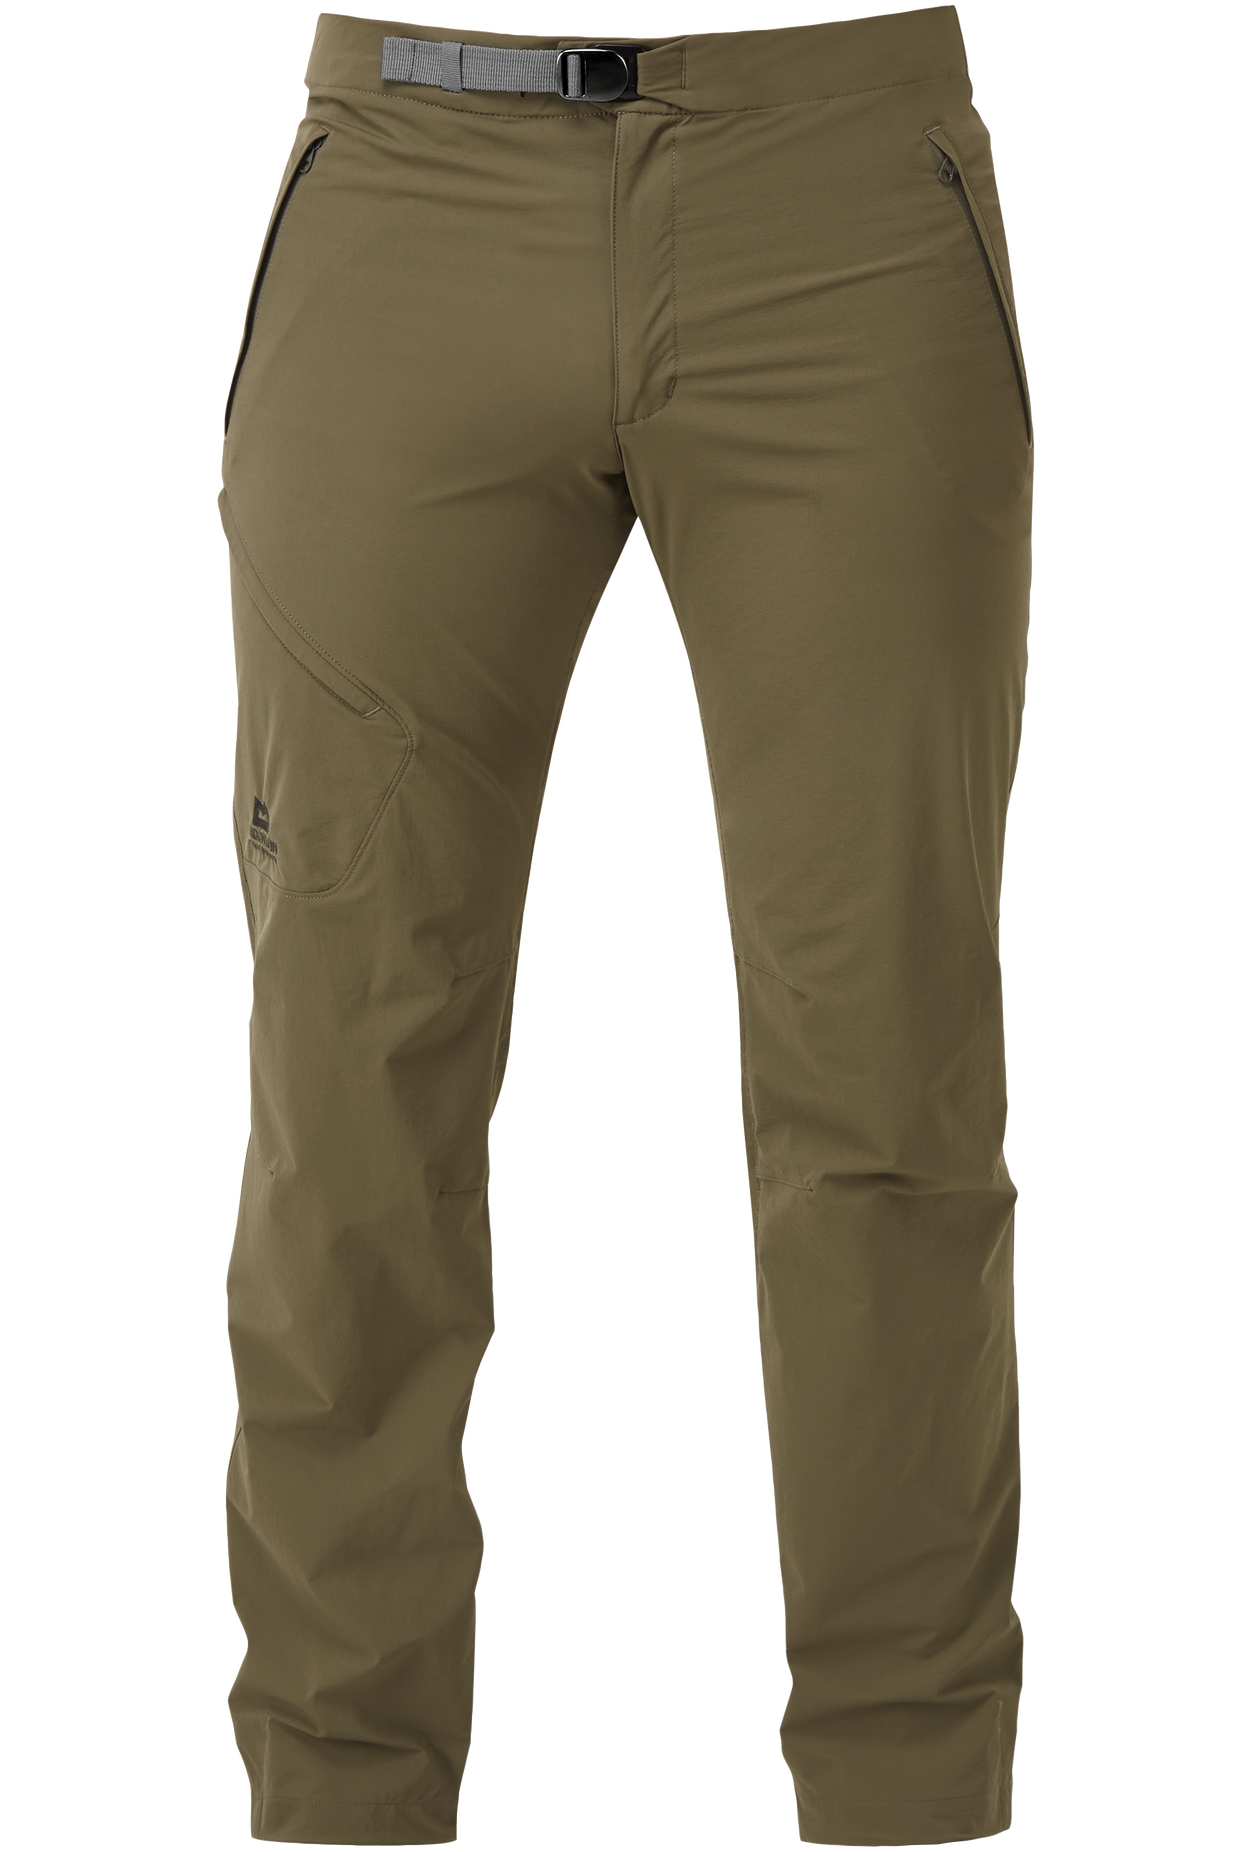 Mountain Equipment pánské softshellové kalhoty Comici Pant - prodloužené Barva: Mudstone, Velikost: 34/L